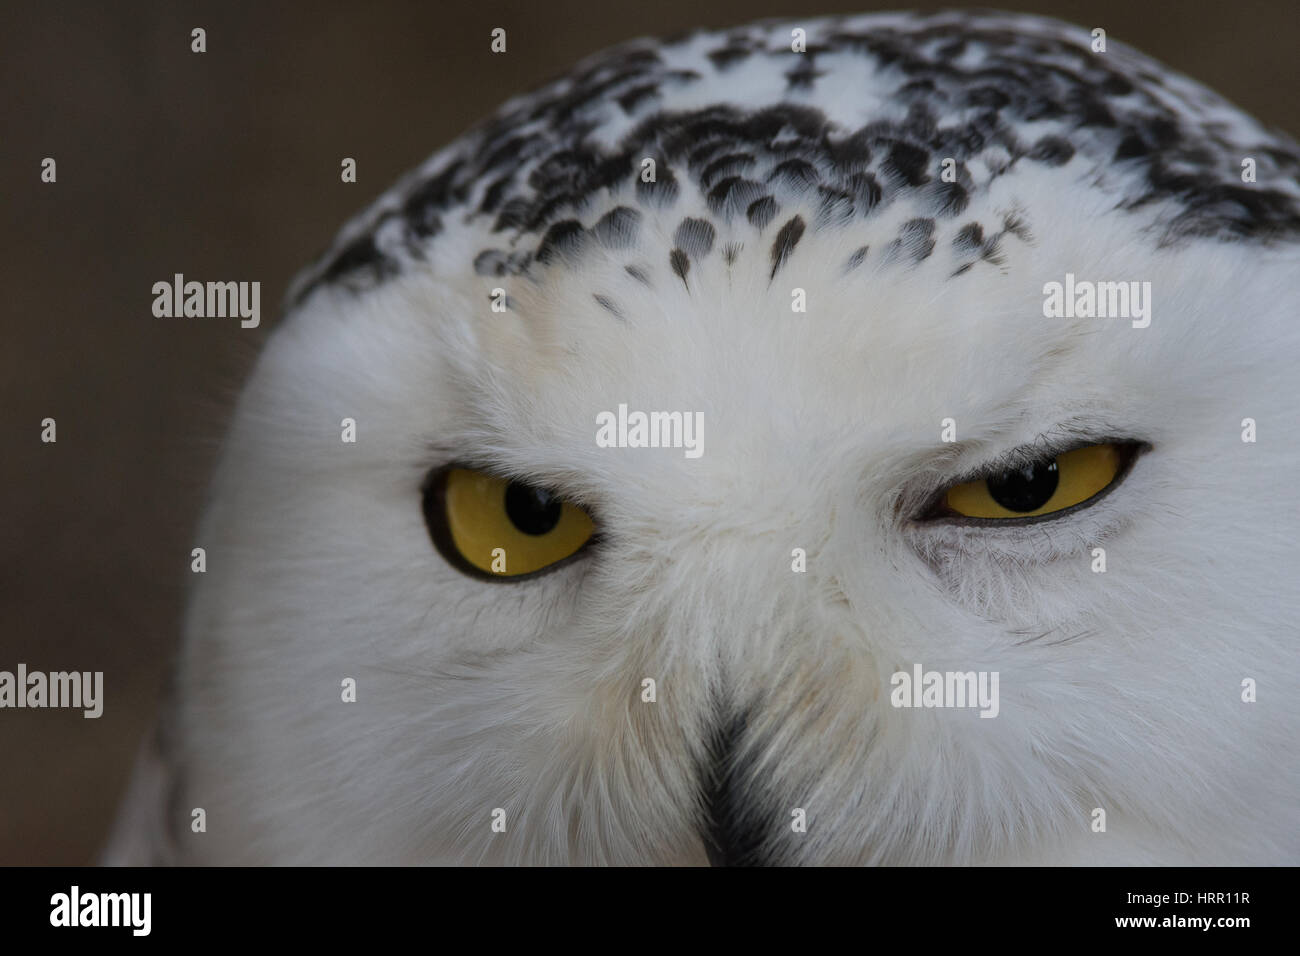 Snowy Owl, Owl, schwarze und weiße Vogel, Porträt, mit gelben Augen Gufo delle Nevi - snowly Eule entdeckt Stockfoto